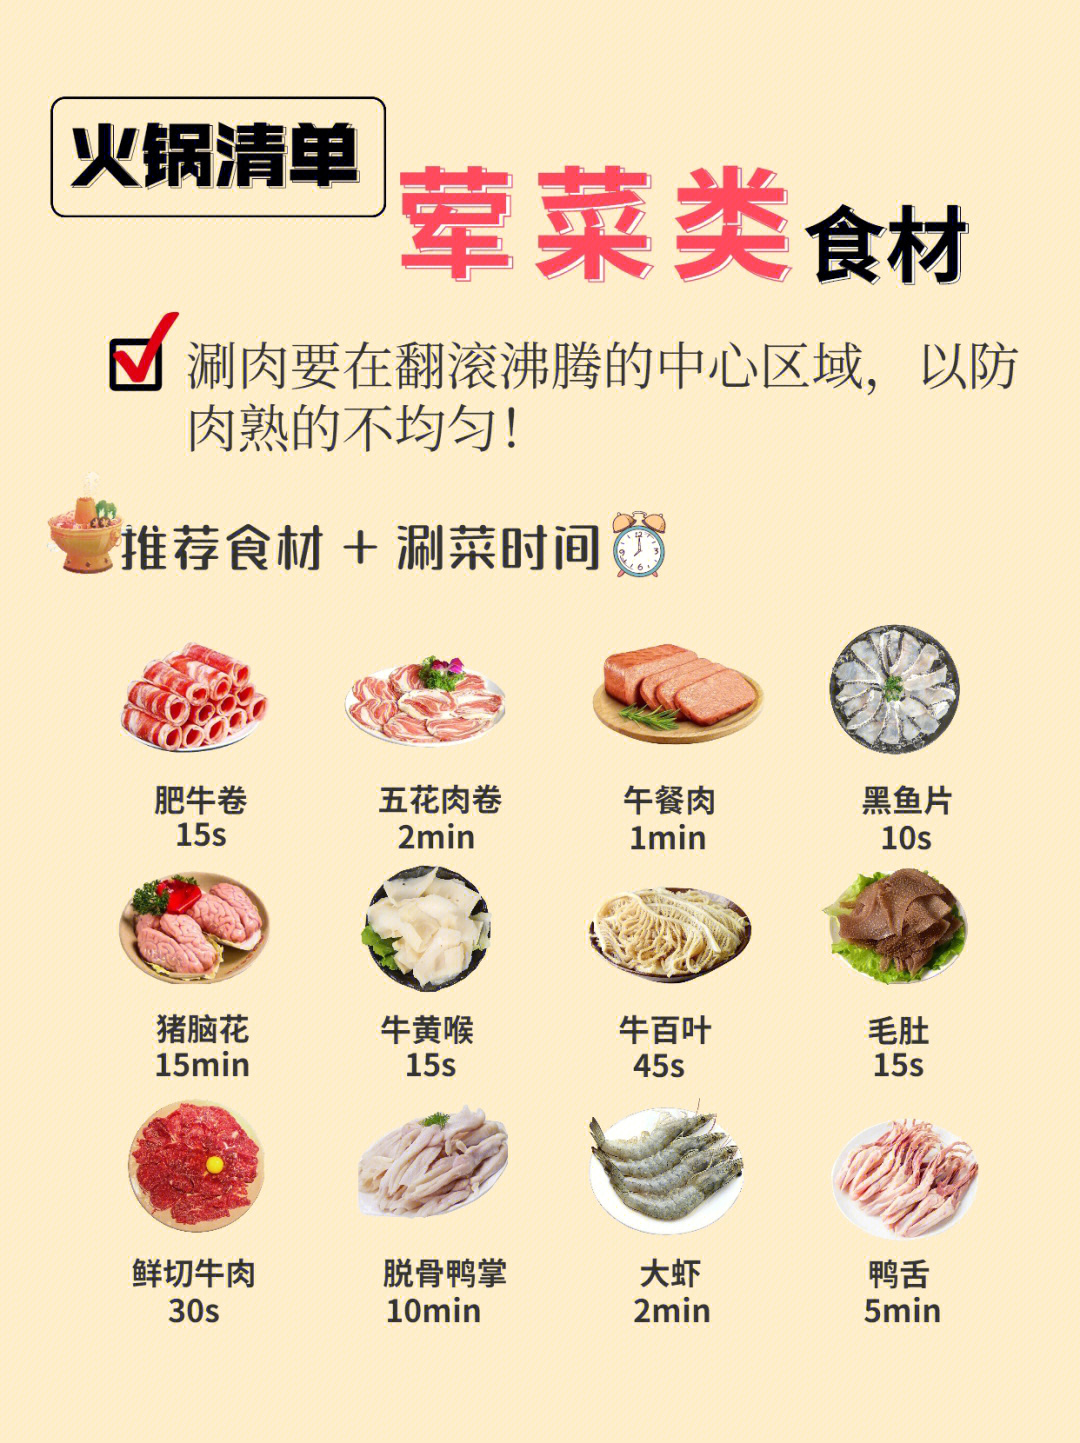 自助火锅食材清单图片